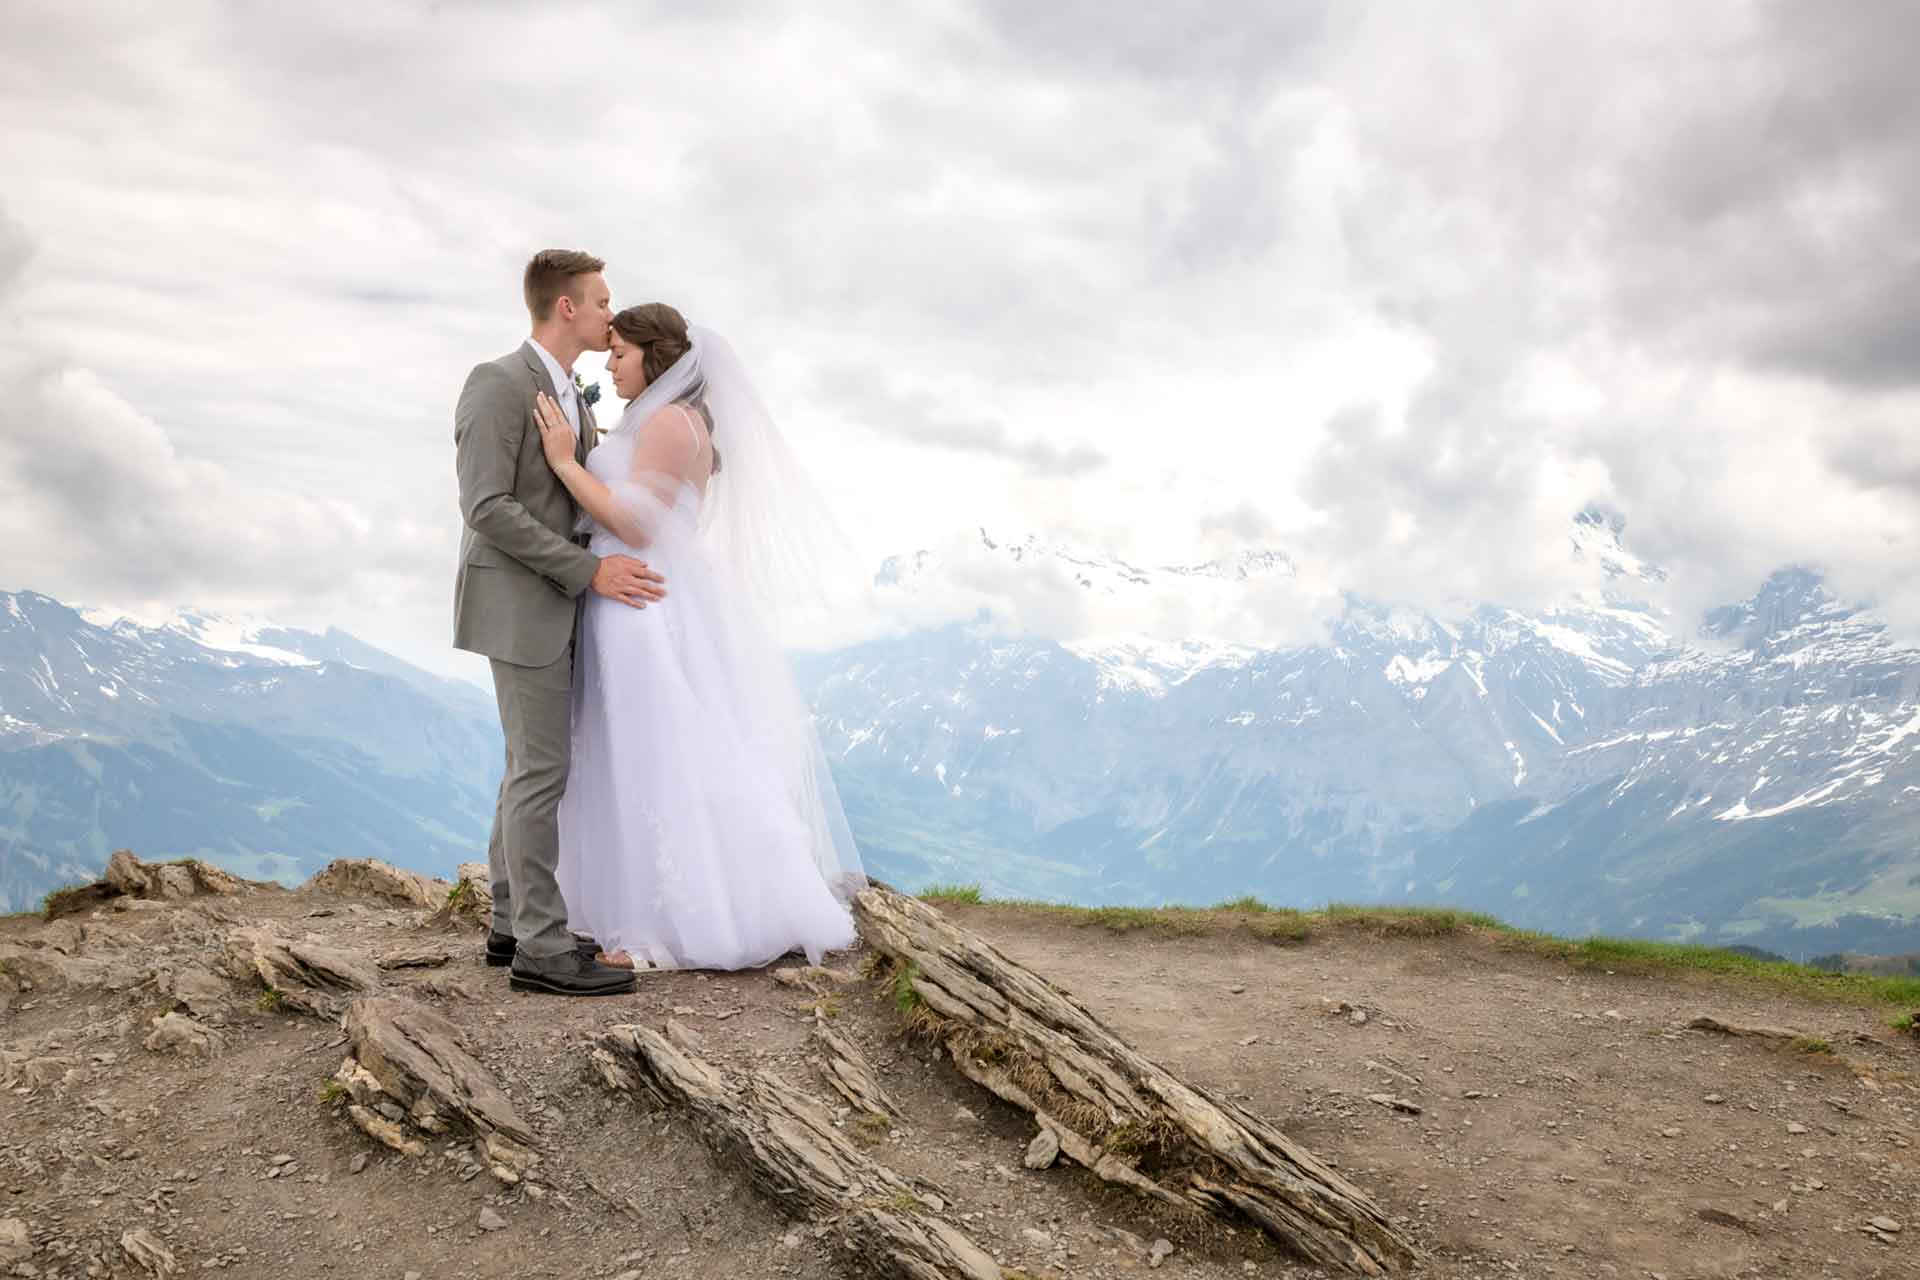 After Wedding Photo Shoot on Mannlichen Mountain